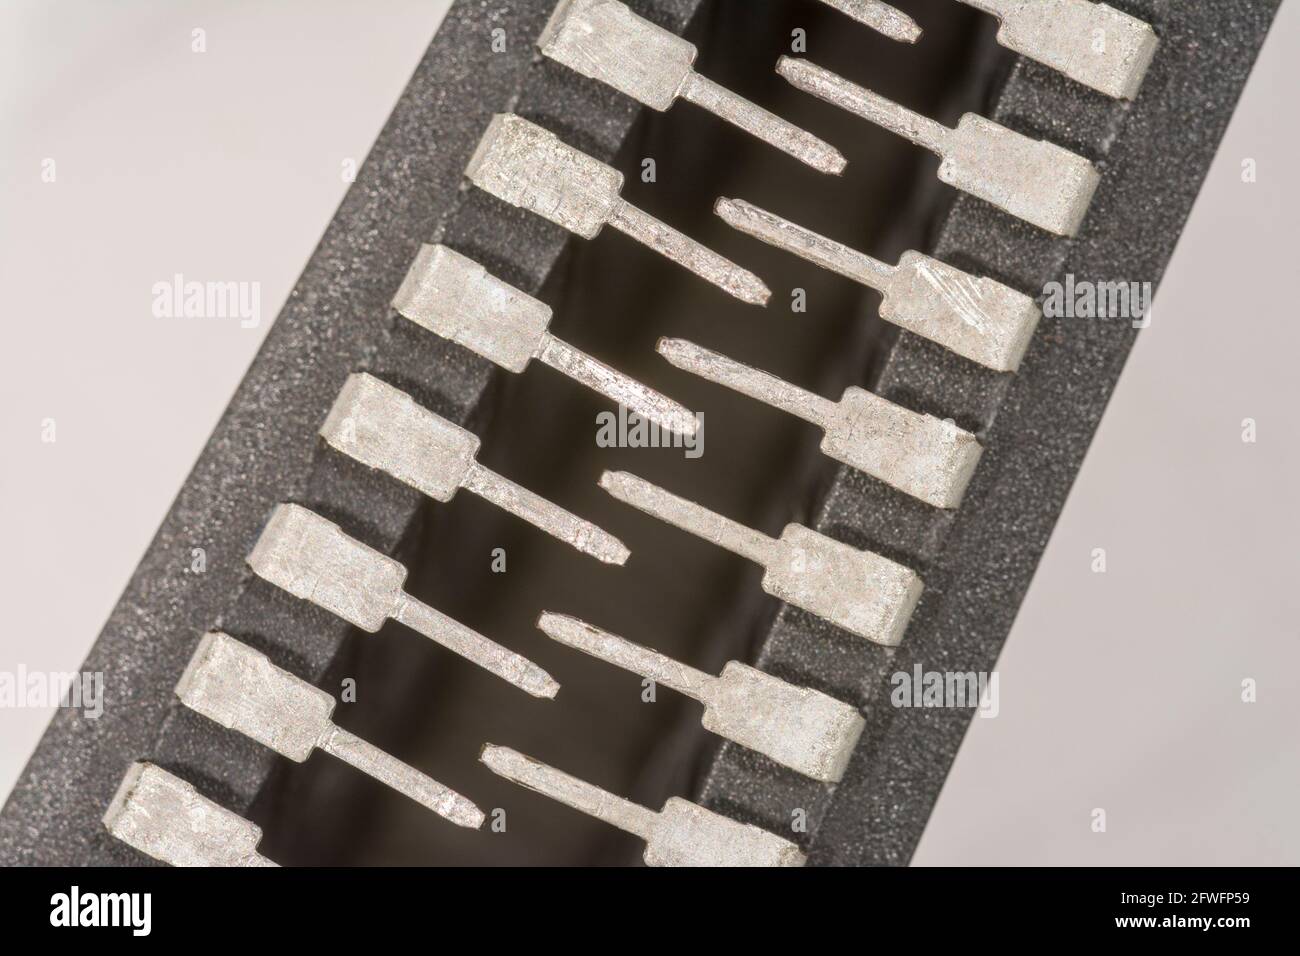 Makroaufnahme der Stiftschaltungen des Halbleiters PIC16F77-I/P von Microchip Technology. Für Elektronik abstrakt, Industriekomponenten abstrakt. Stockfoto